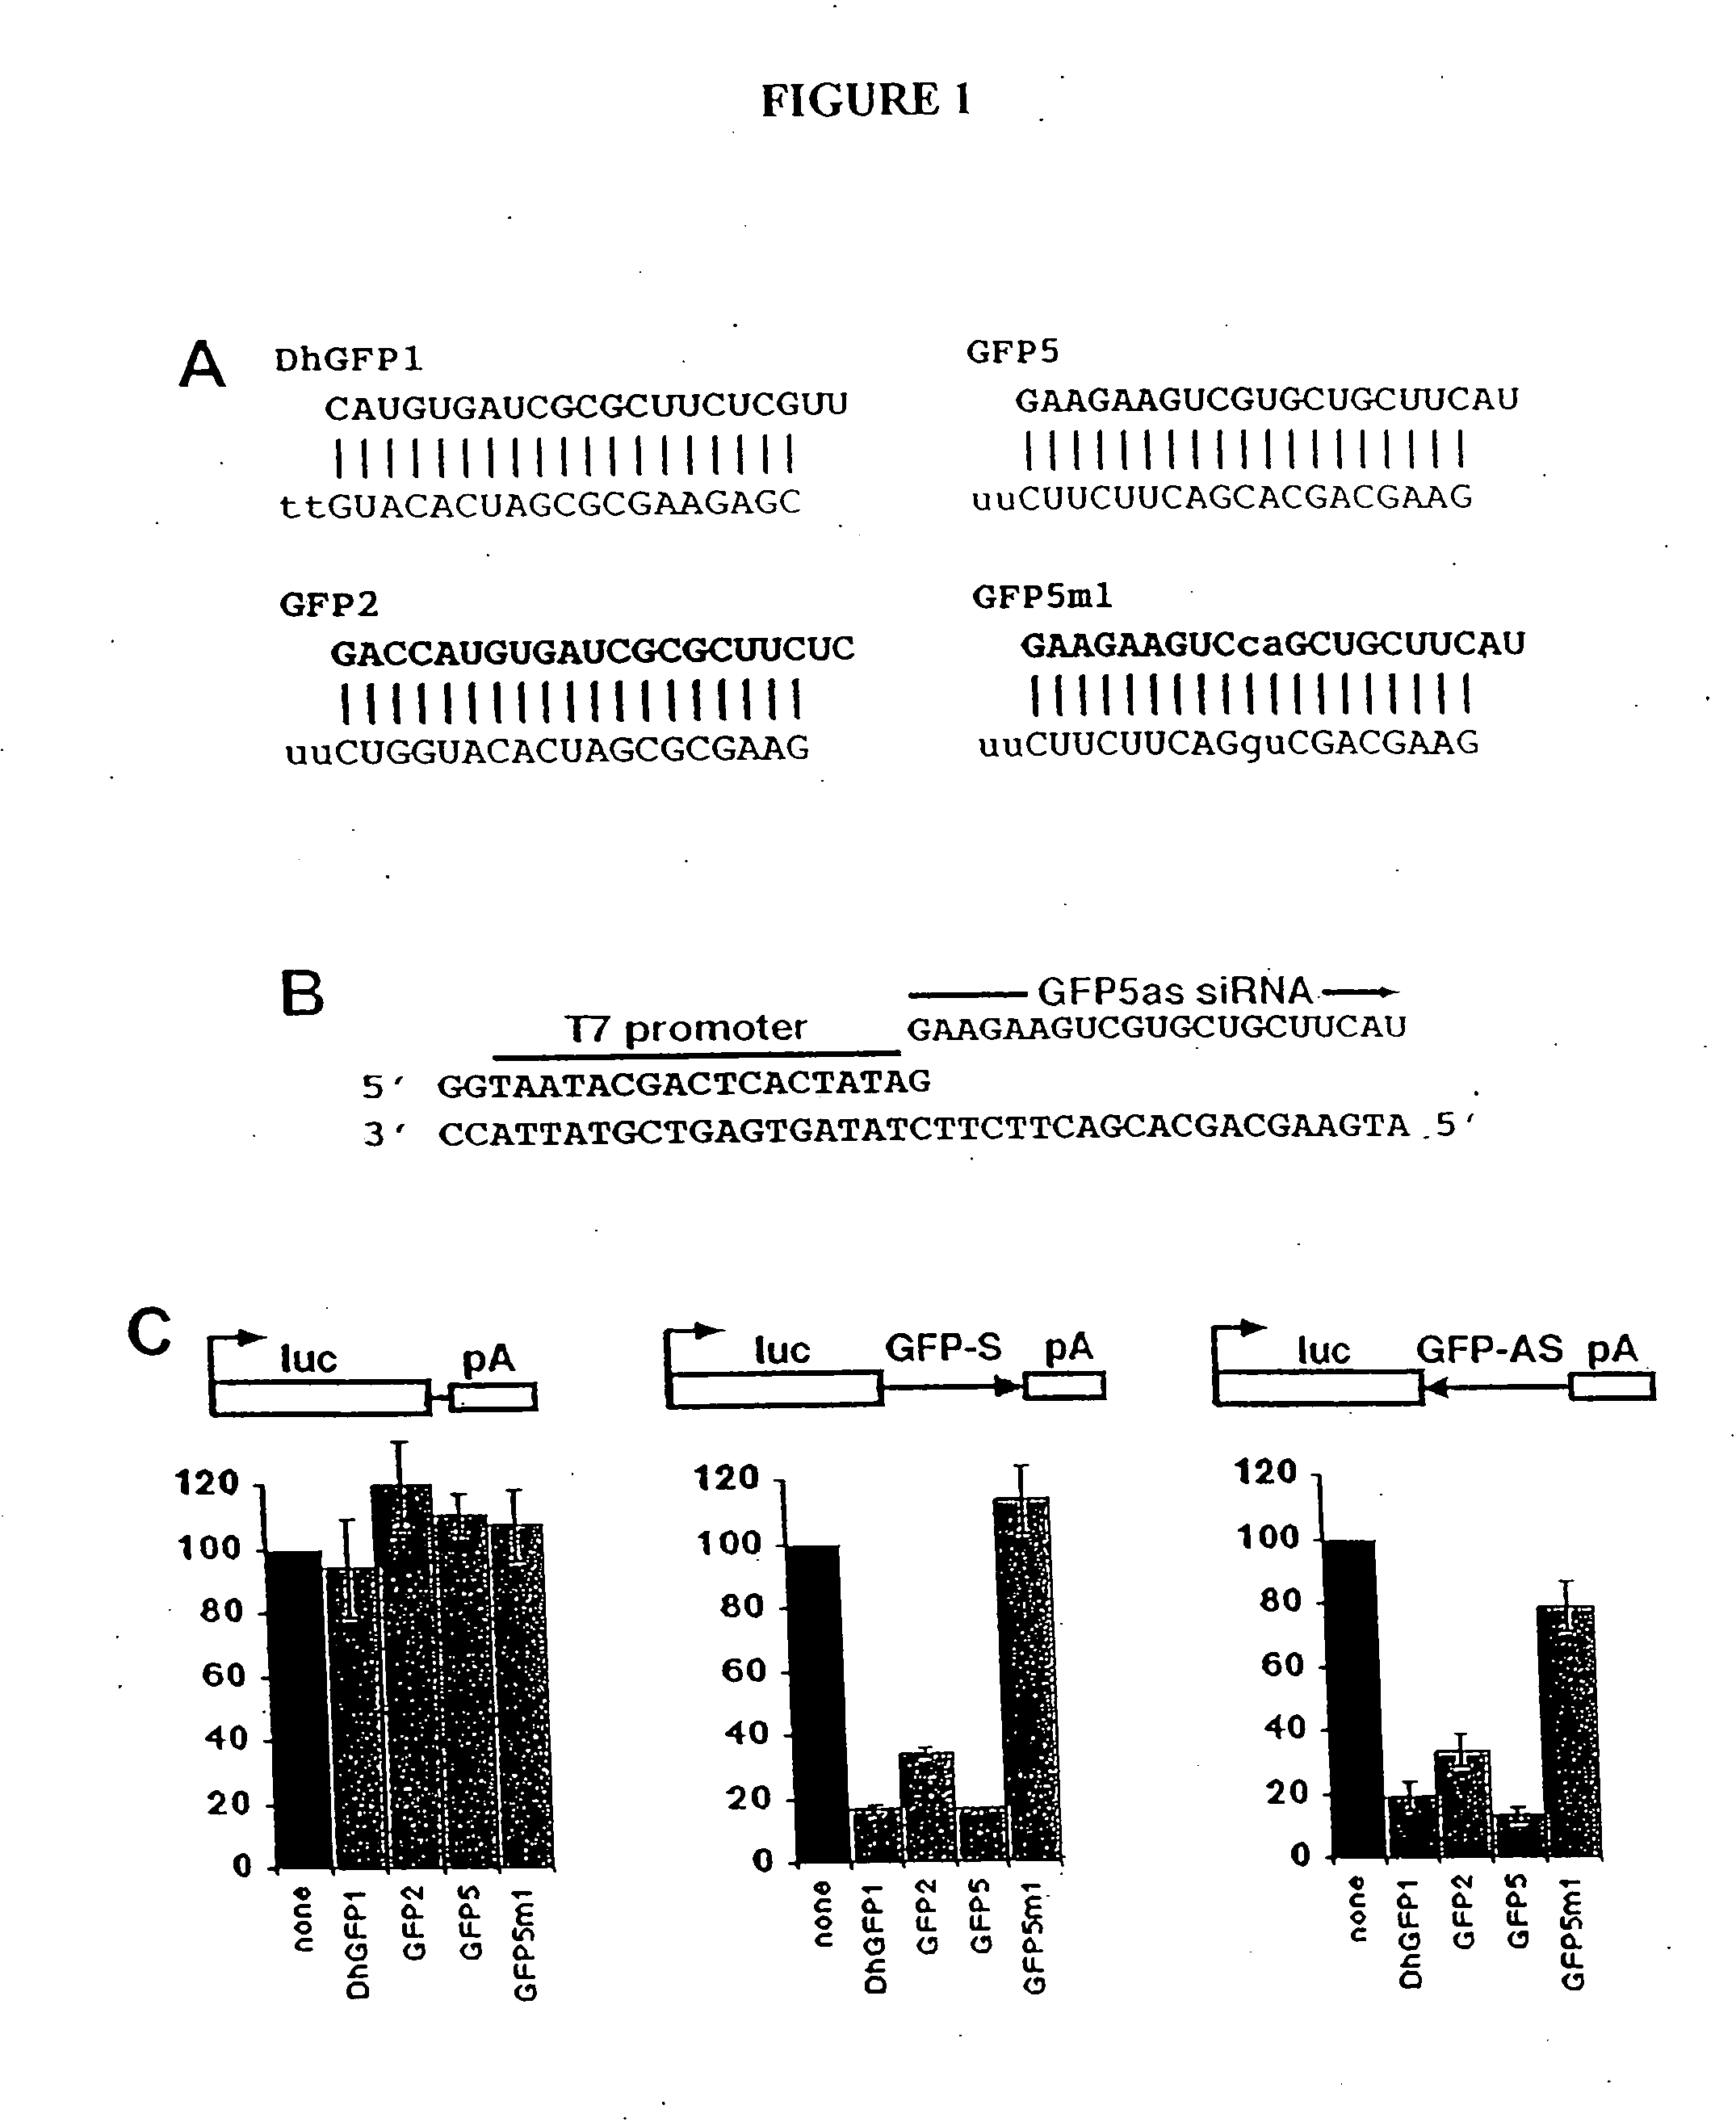 MicroRNA vectors